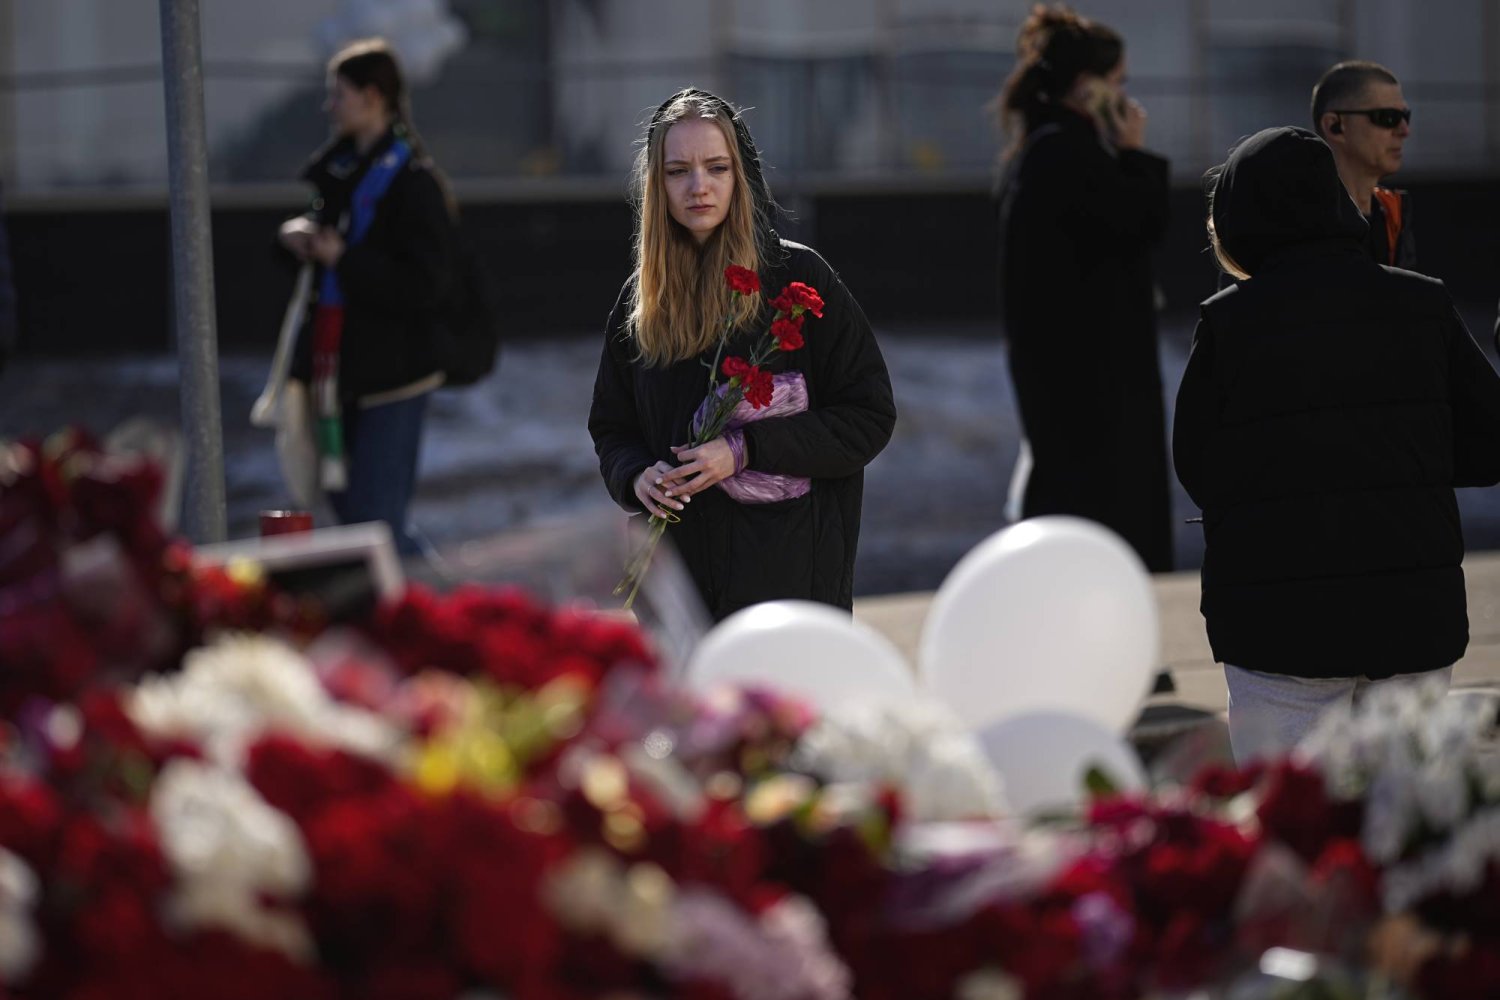 شابة تحمل أزهار القرنفل الحمراء أمام نصب تذكاري أمام قاعة مدينة كروكوس في الضواحي الغربية لموسكو حيث وقع هجوم دامٍ على قاعة الحفلات الموسيقية الأسبوع الماضي (أ.ب)